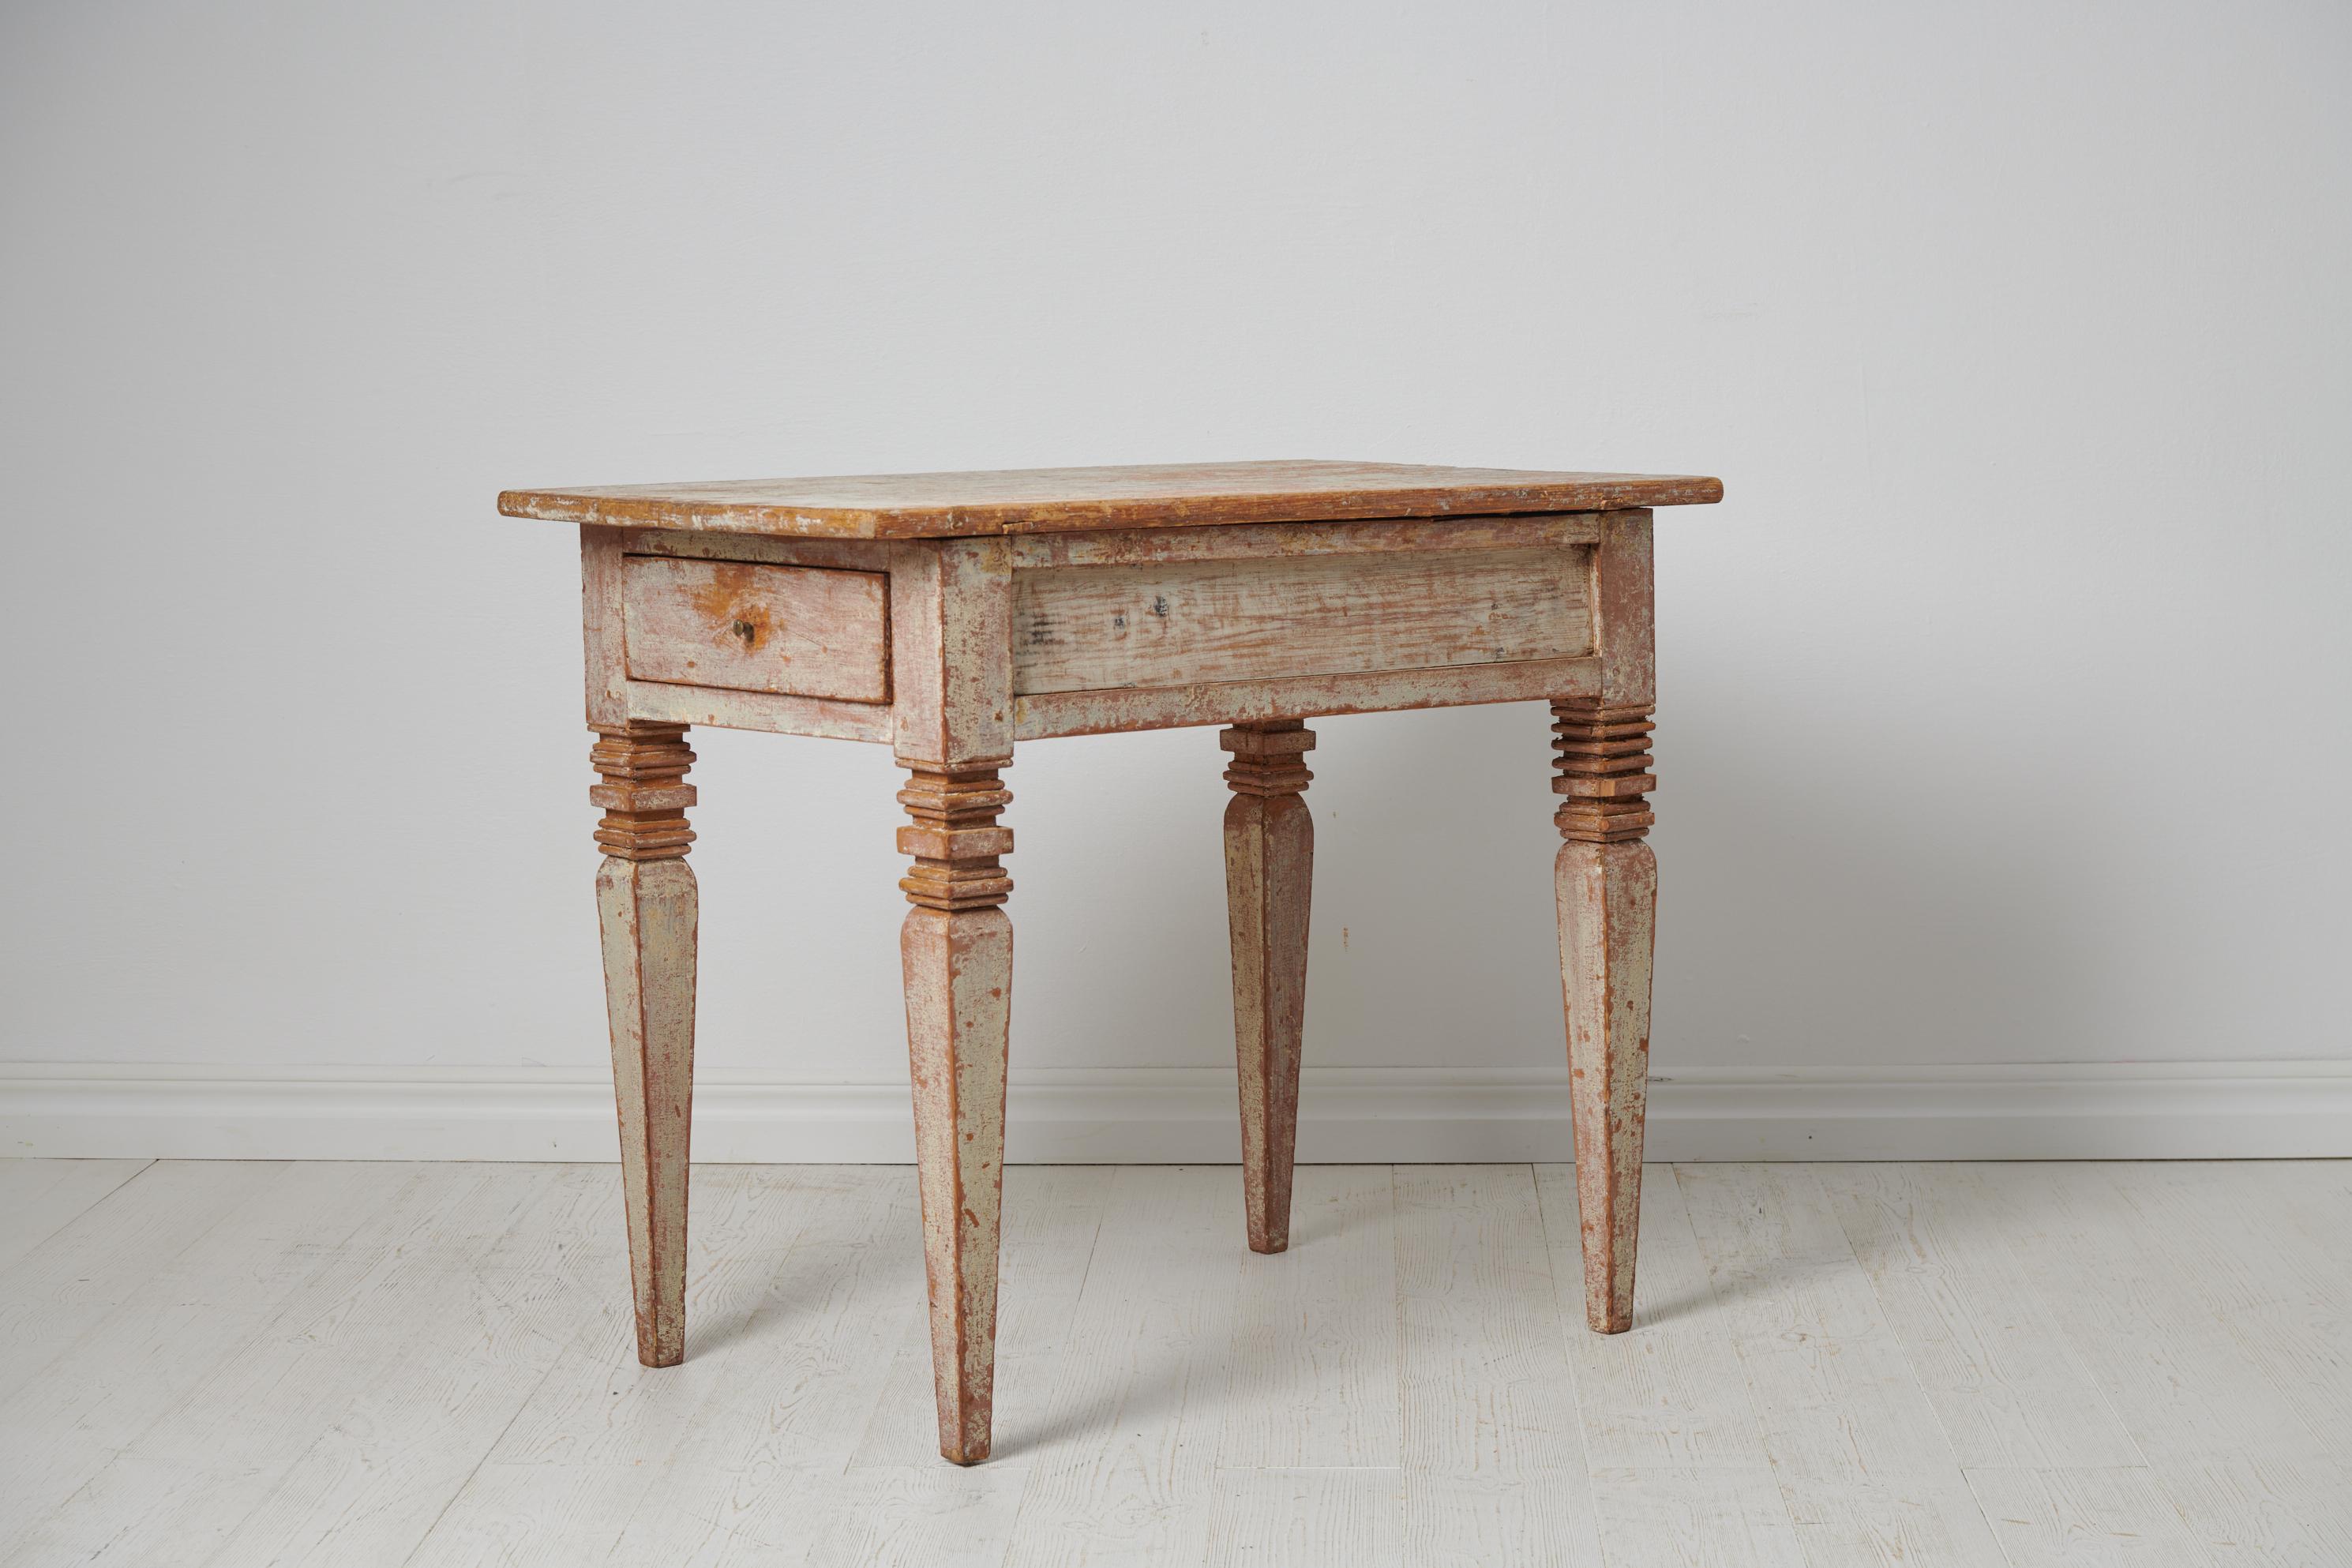 Ancienne table suédoise gustavienne datant d'environ 1810. La table est de style gustavien, également connu sous le nom de néoclassique, et est fabriquée en pin suédois massif. La table a conservé sa peinture d'origine et présente un caractère